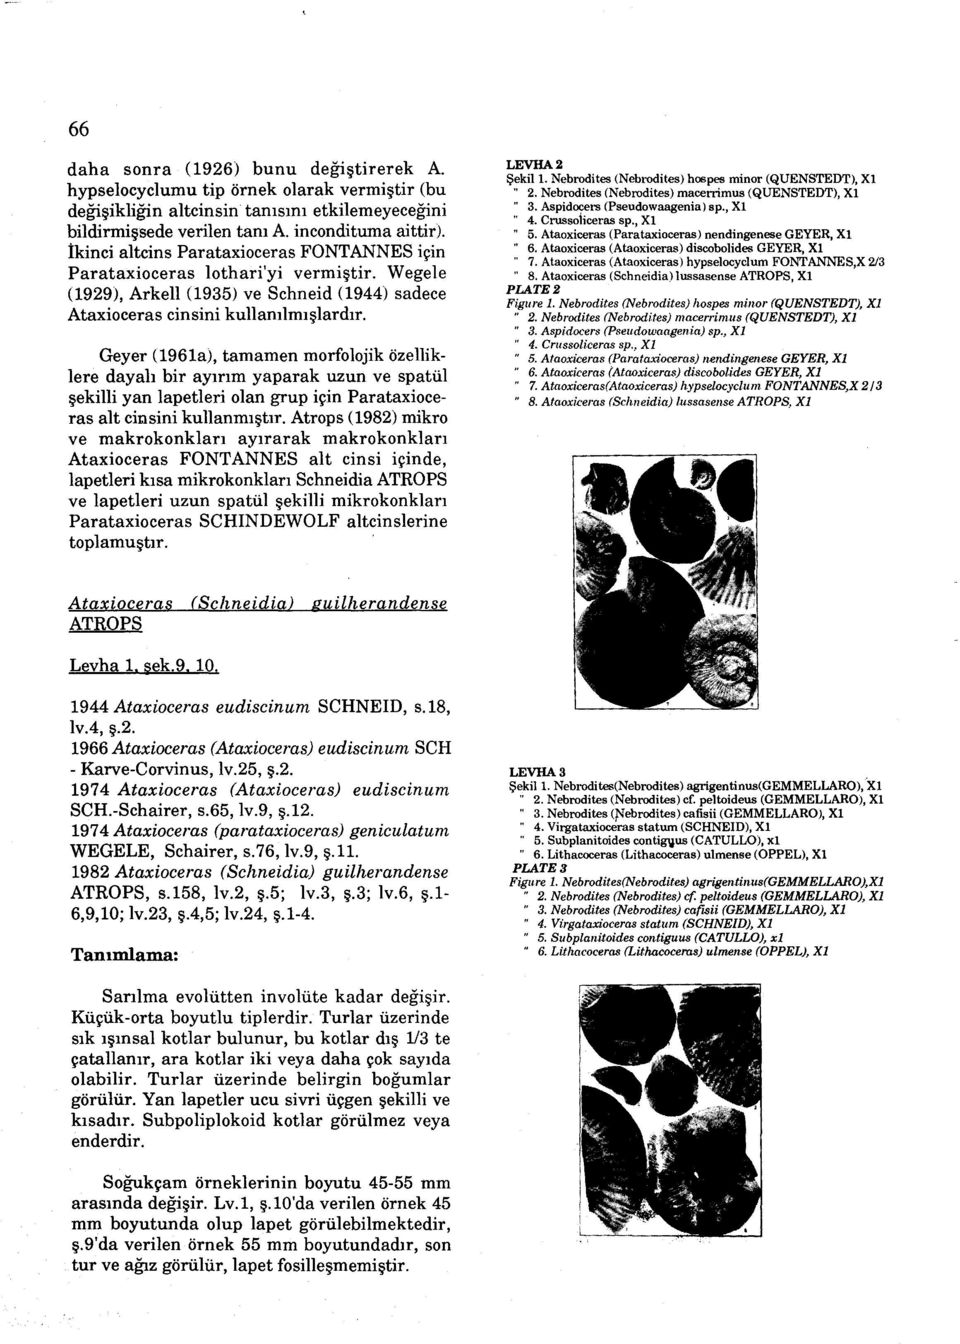 Geyer (1961a), tamamen morfolojik özelliklere dayali bir ayirim yaparak uzun ve spatül sekilli yan lapetleri olan grup için Parataxioceras alt cidsini kullanmistir.